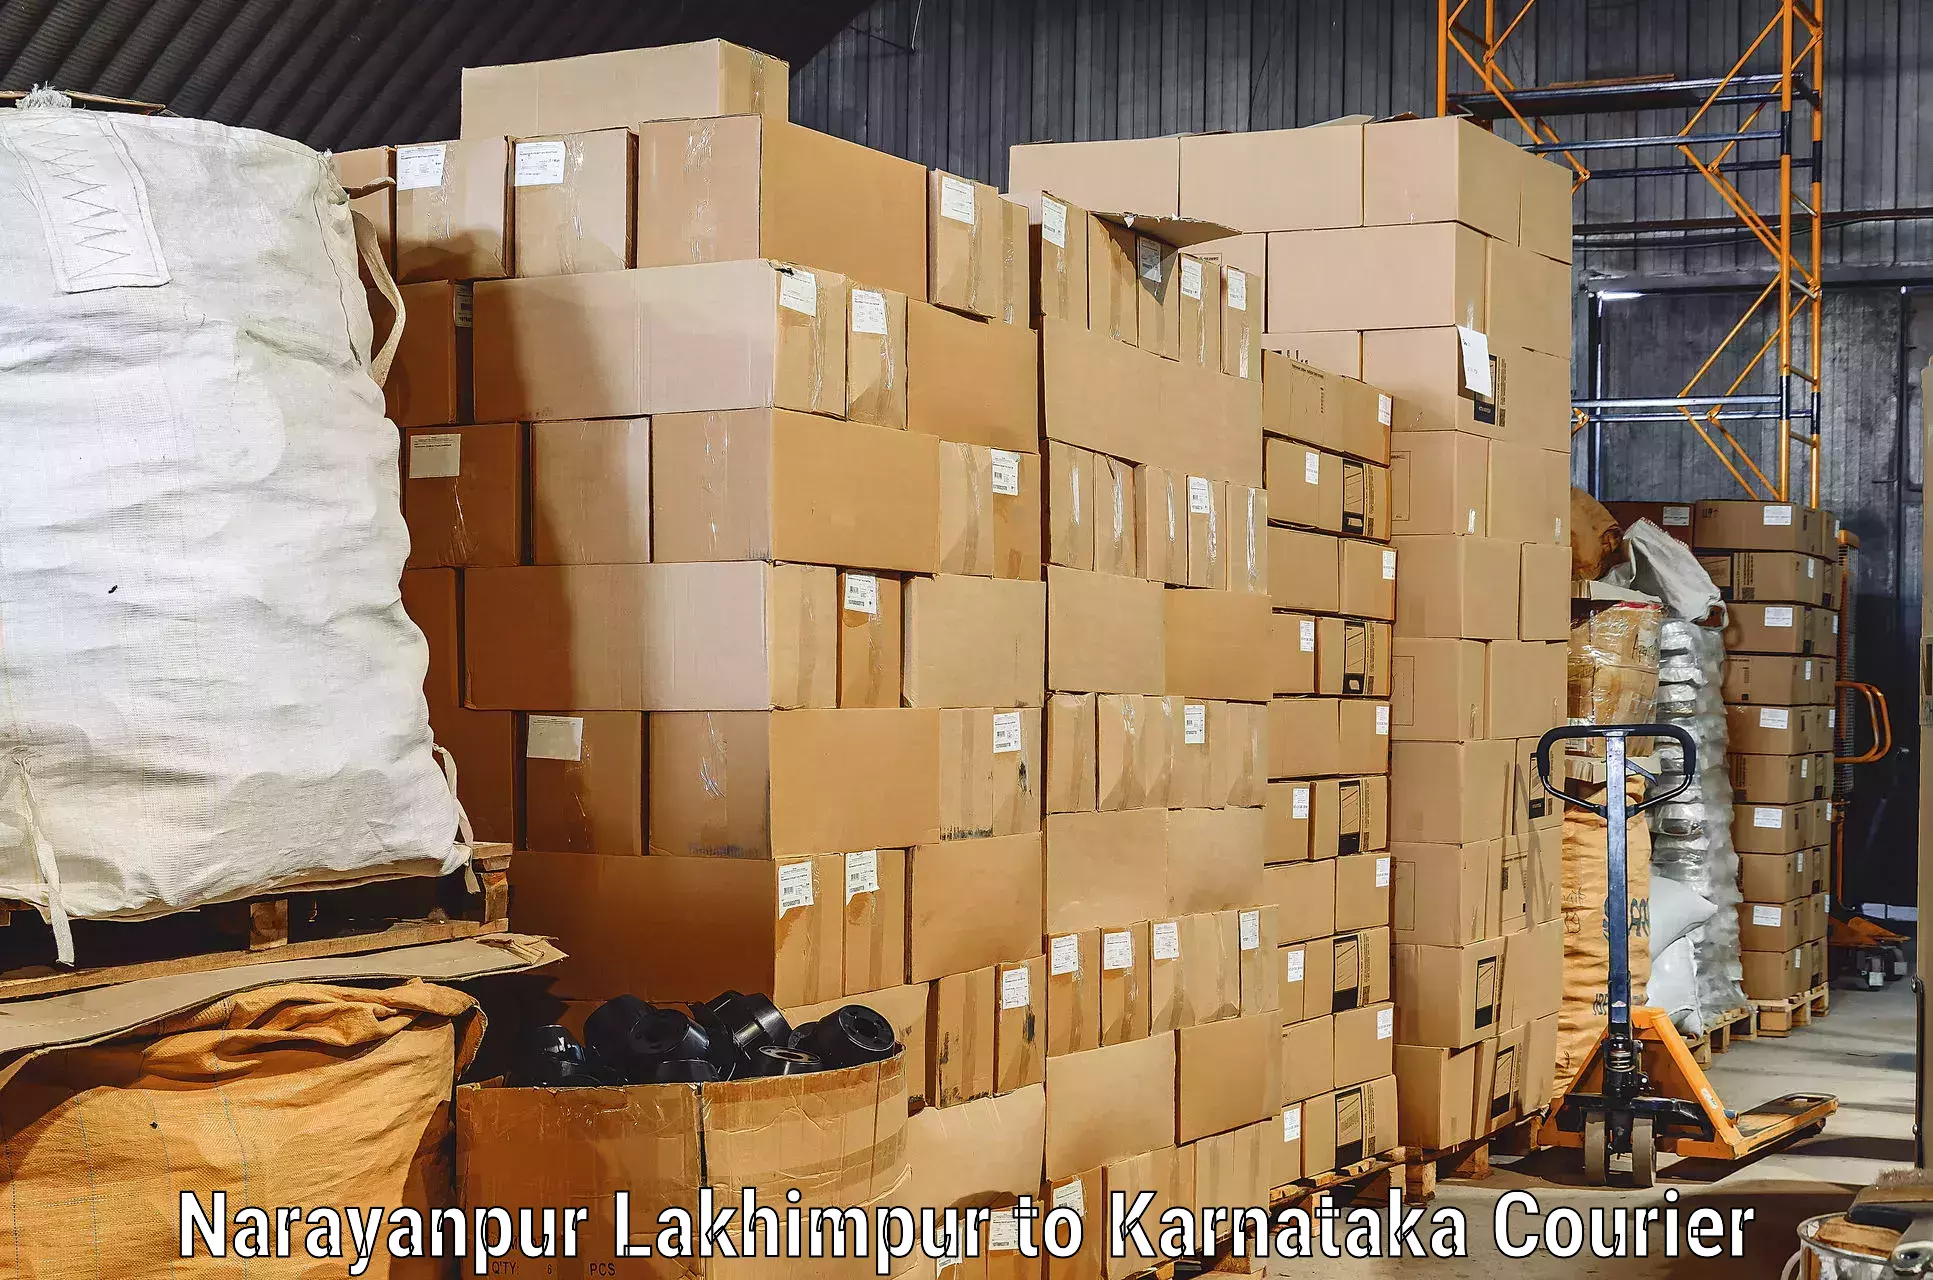 Furniture transport service Narayanpur Lakhimpur to Chikkamagaluru